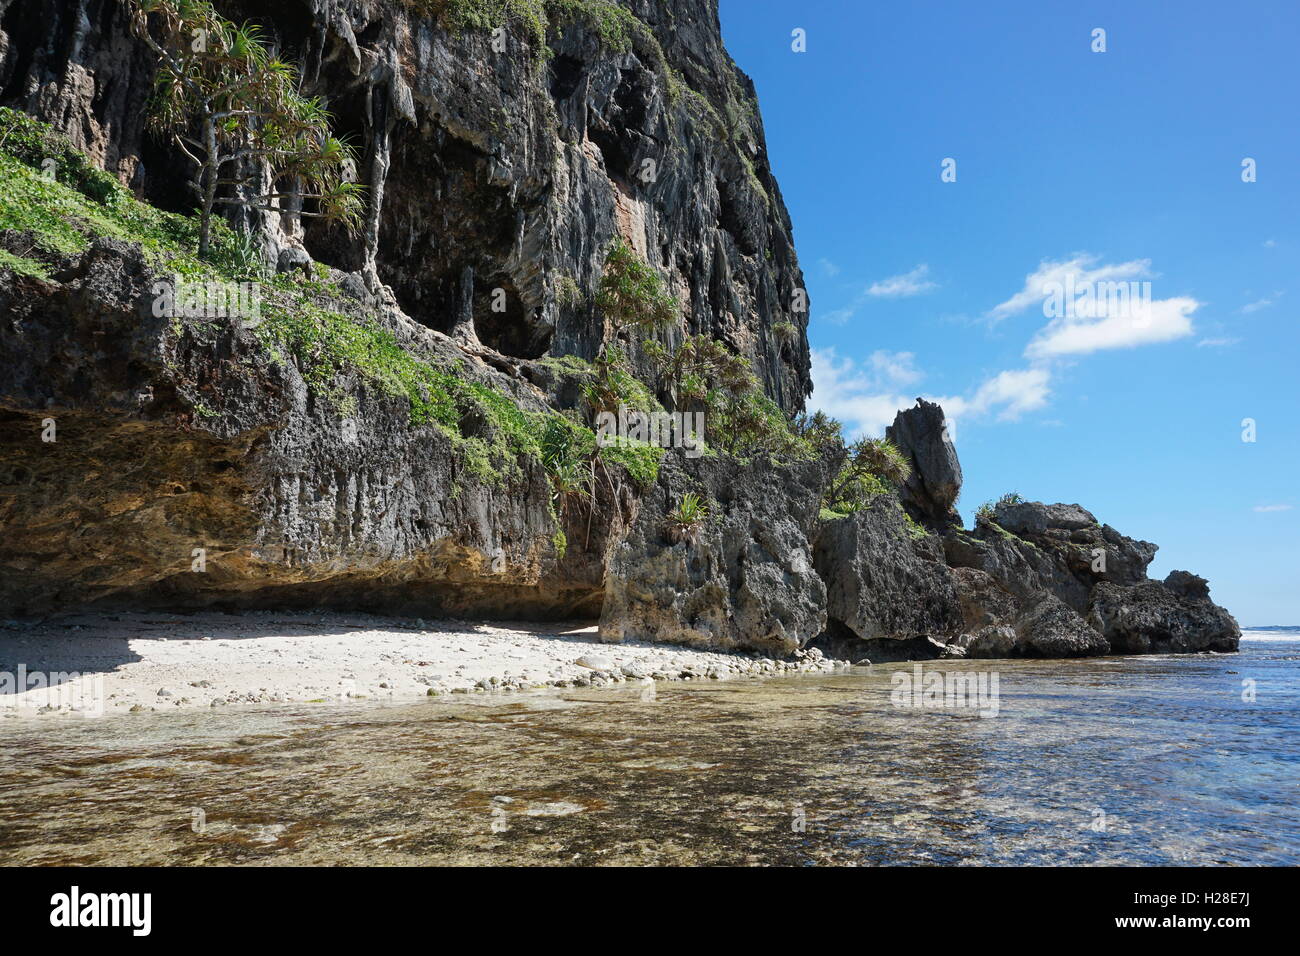 Erosi roccia calcarea con grotta sulla riva di Rurutu island, oceano pacifico, Austral arcipelago, Polinesia Francese Foto Stock